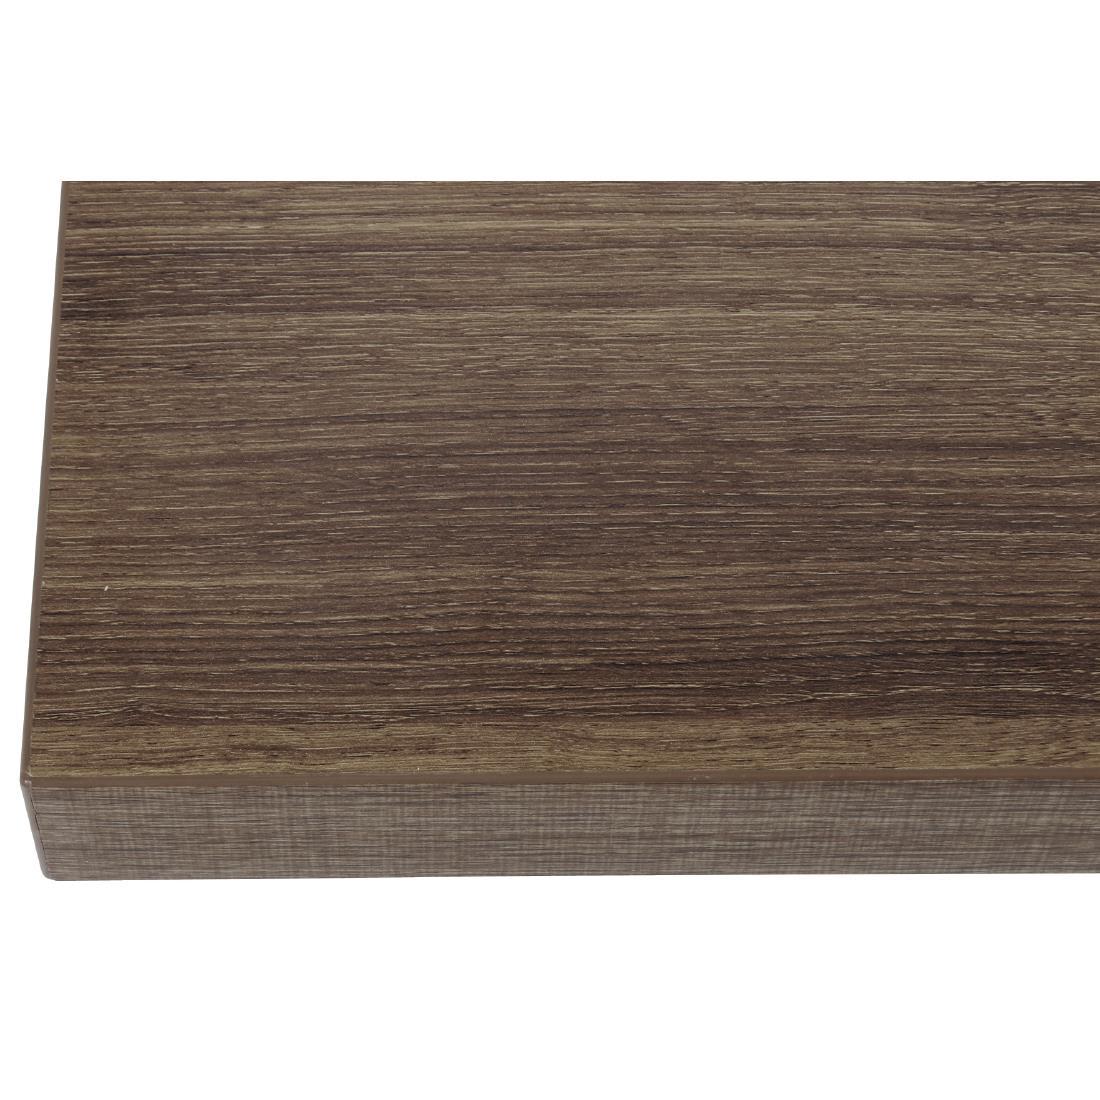 Bolero Pre-drilled Square Table Top Rustic Oak 600mm - GR324  - 2